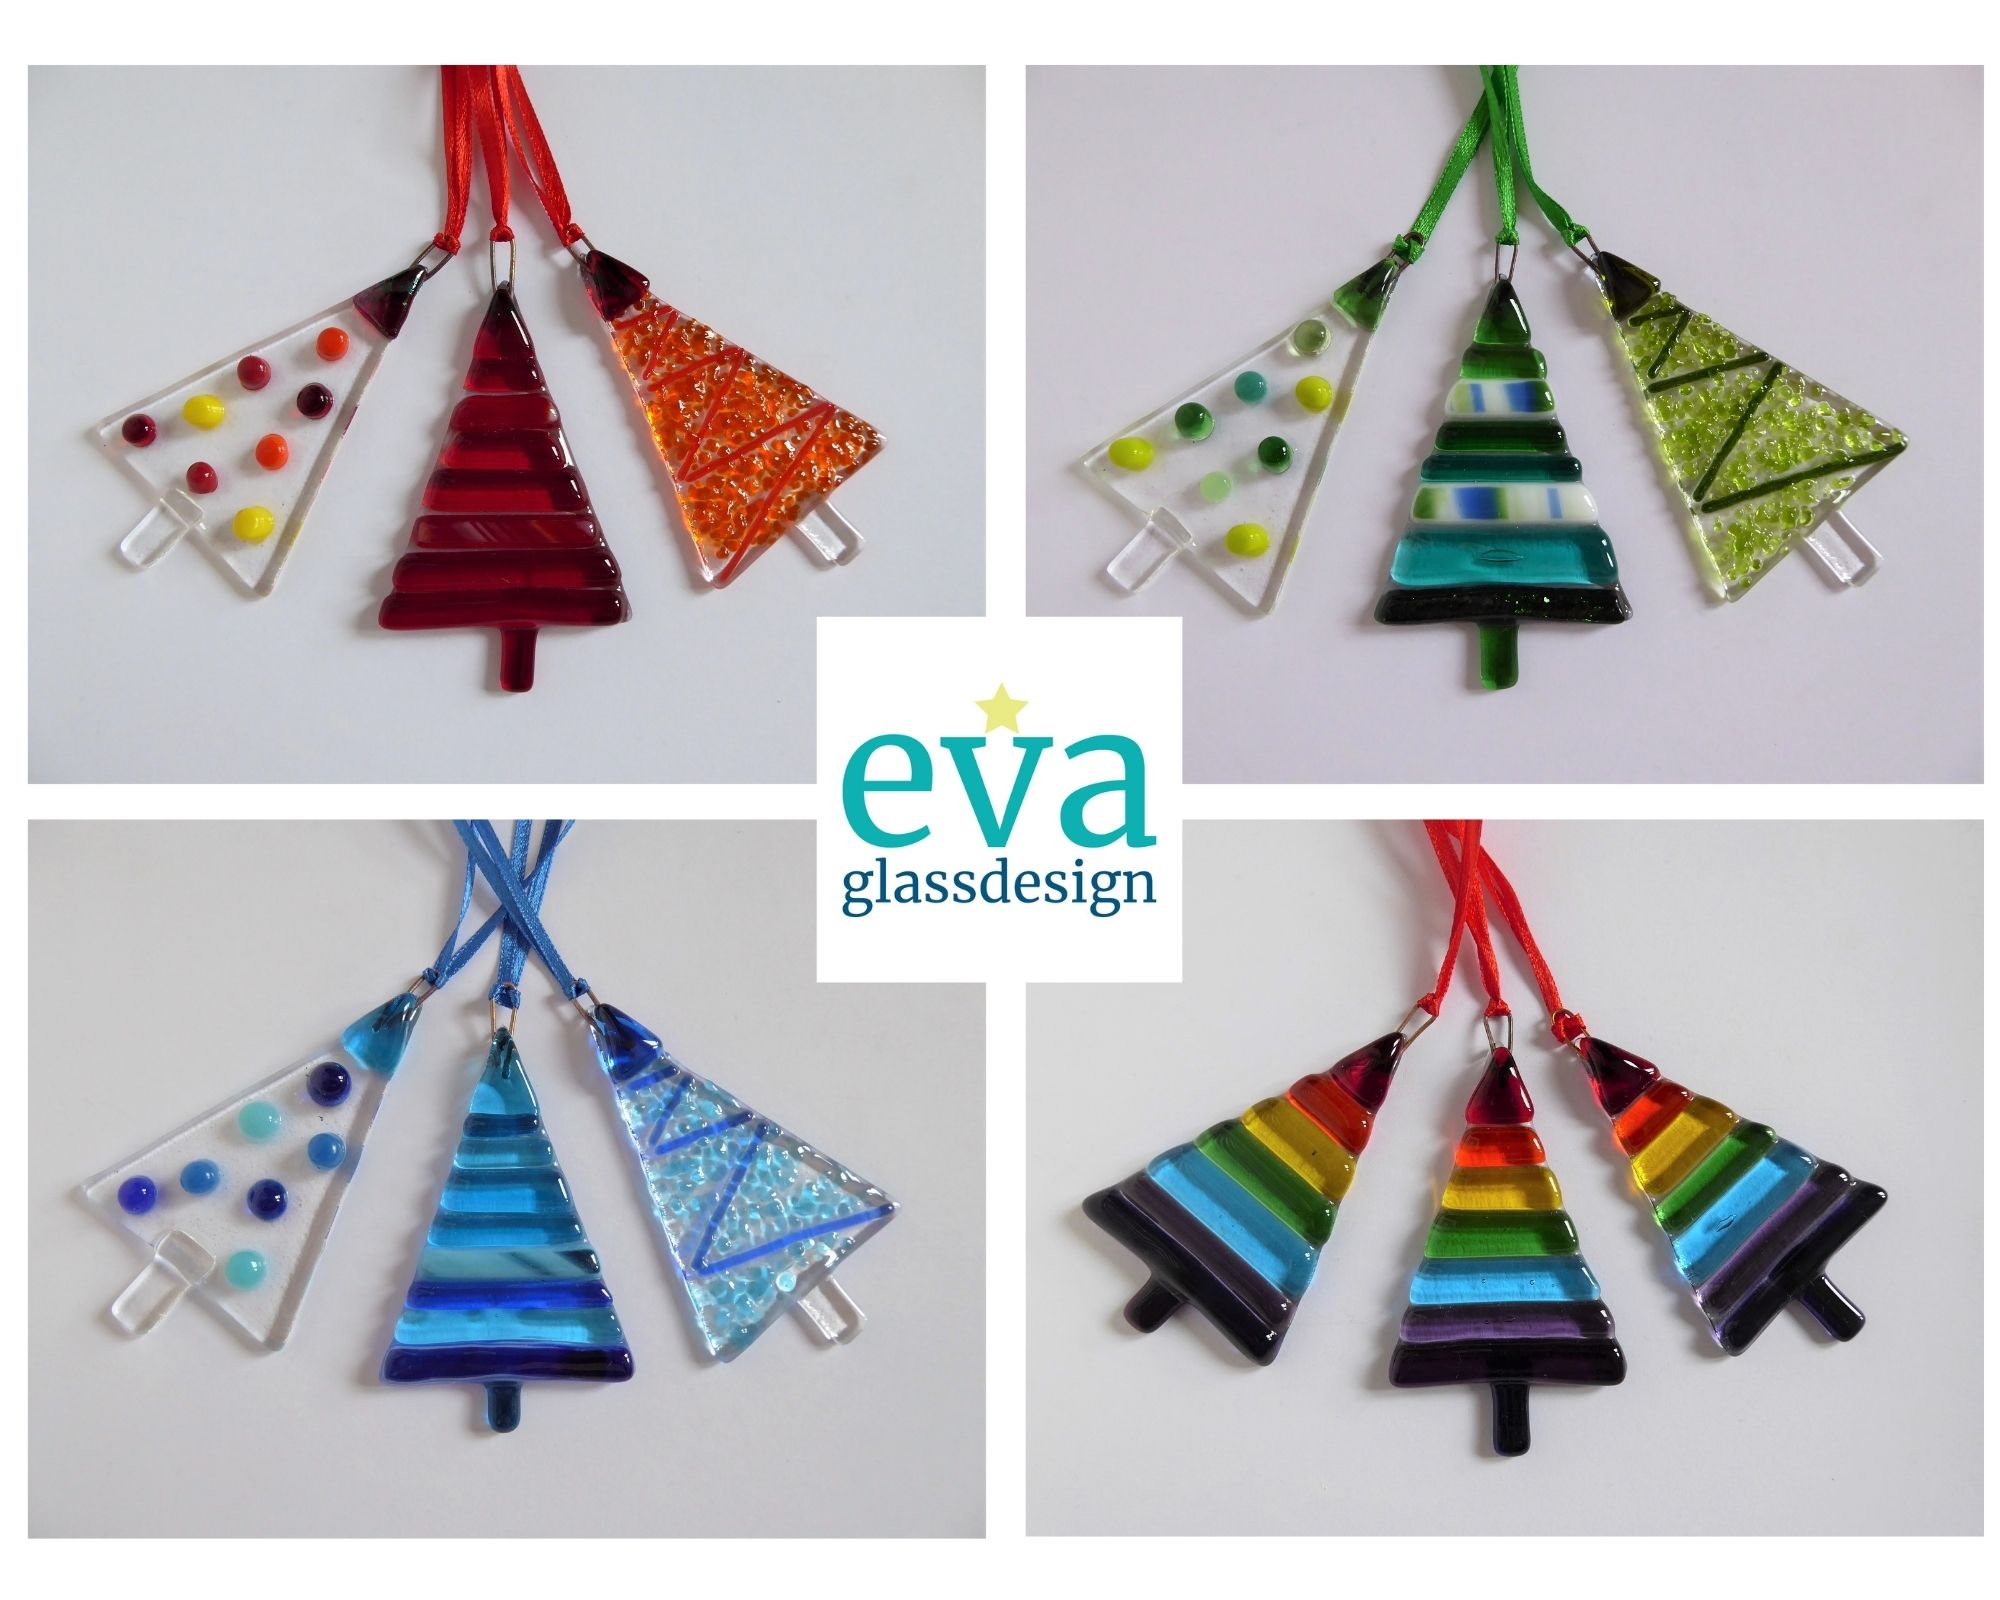 Pollard Eva Eva Glass Design Contemporary Glass Society 